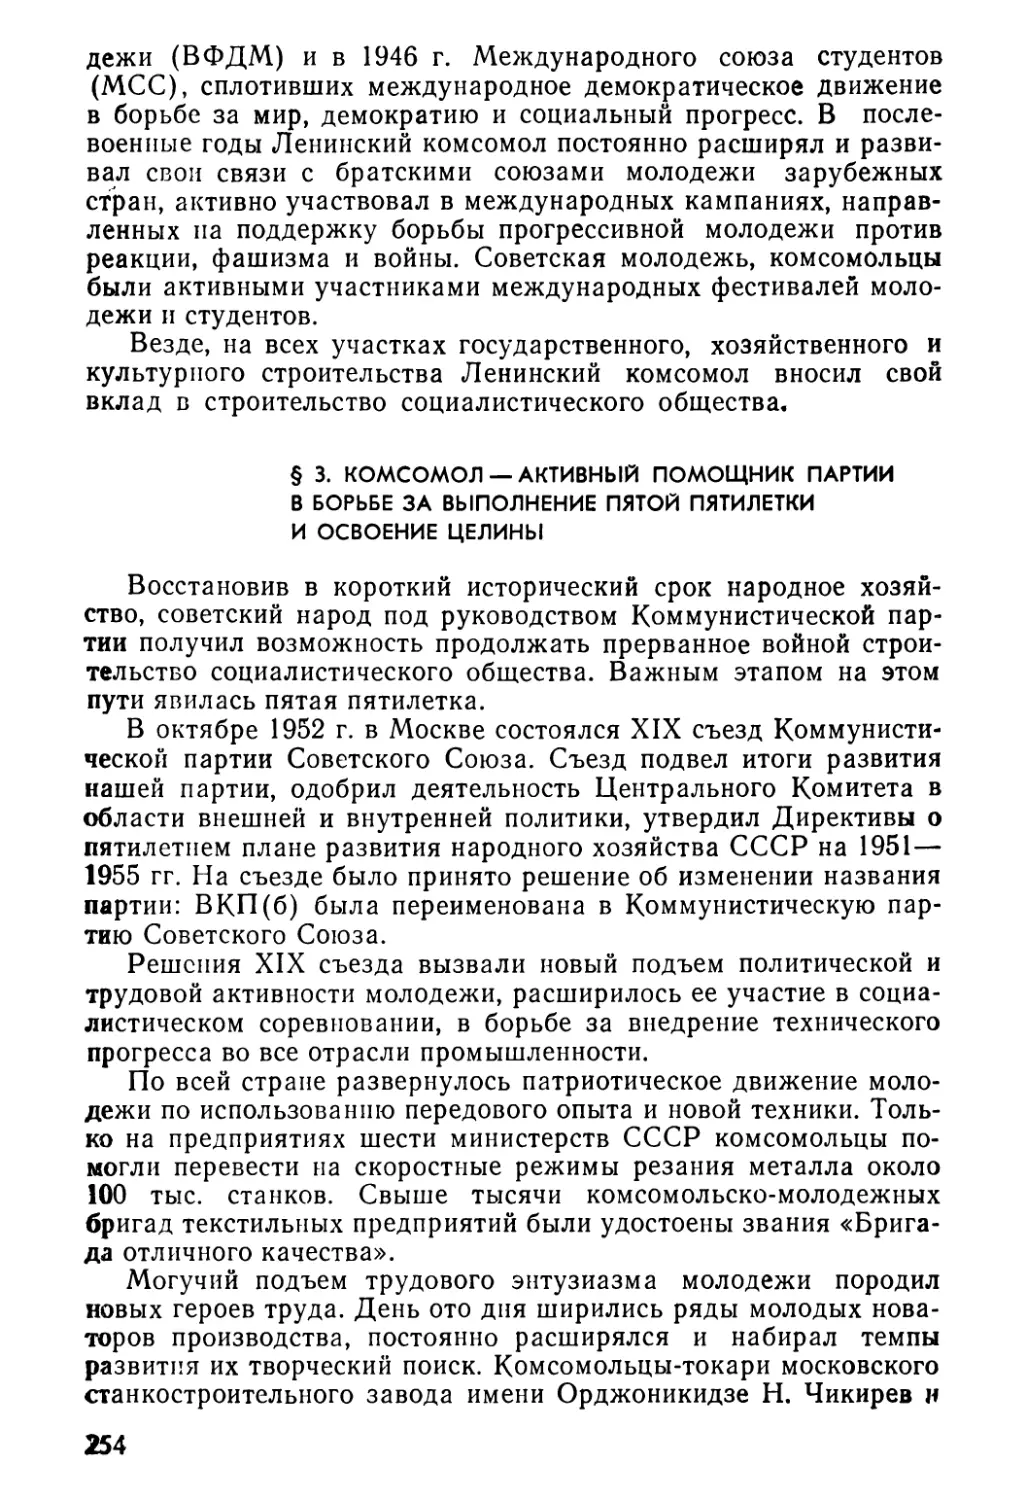 § 3. Комсомол — активный помощник партии в борьбе за выполнение пятой пятилетки и освоение целины